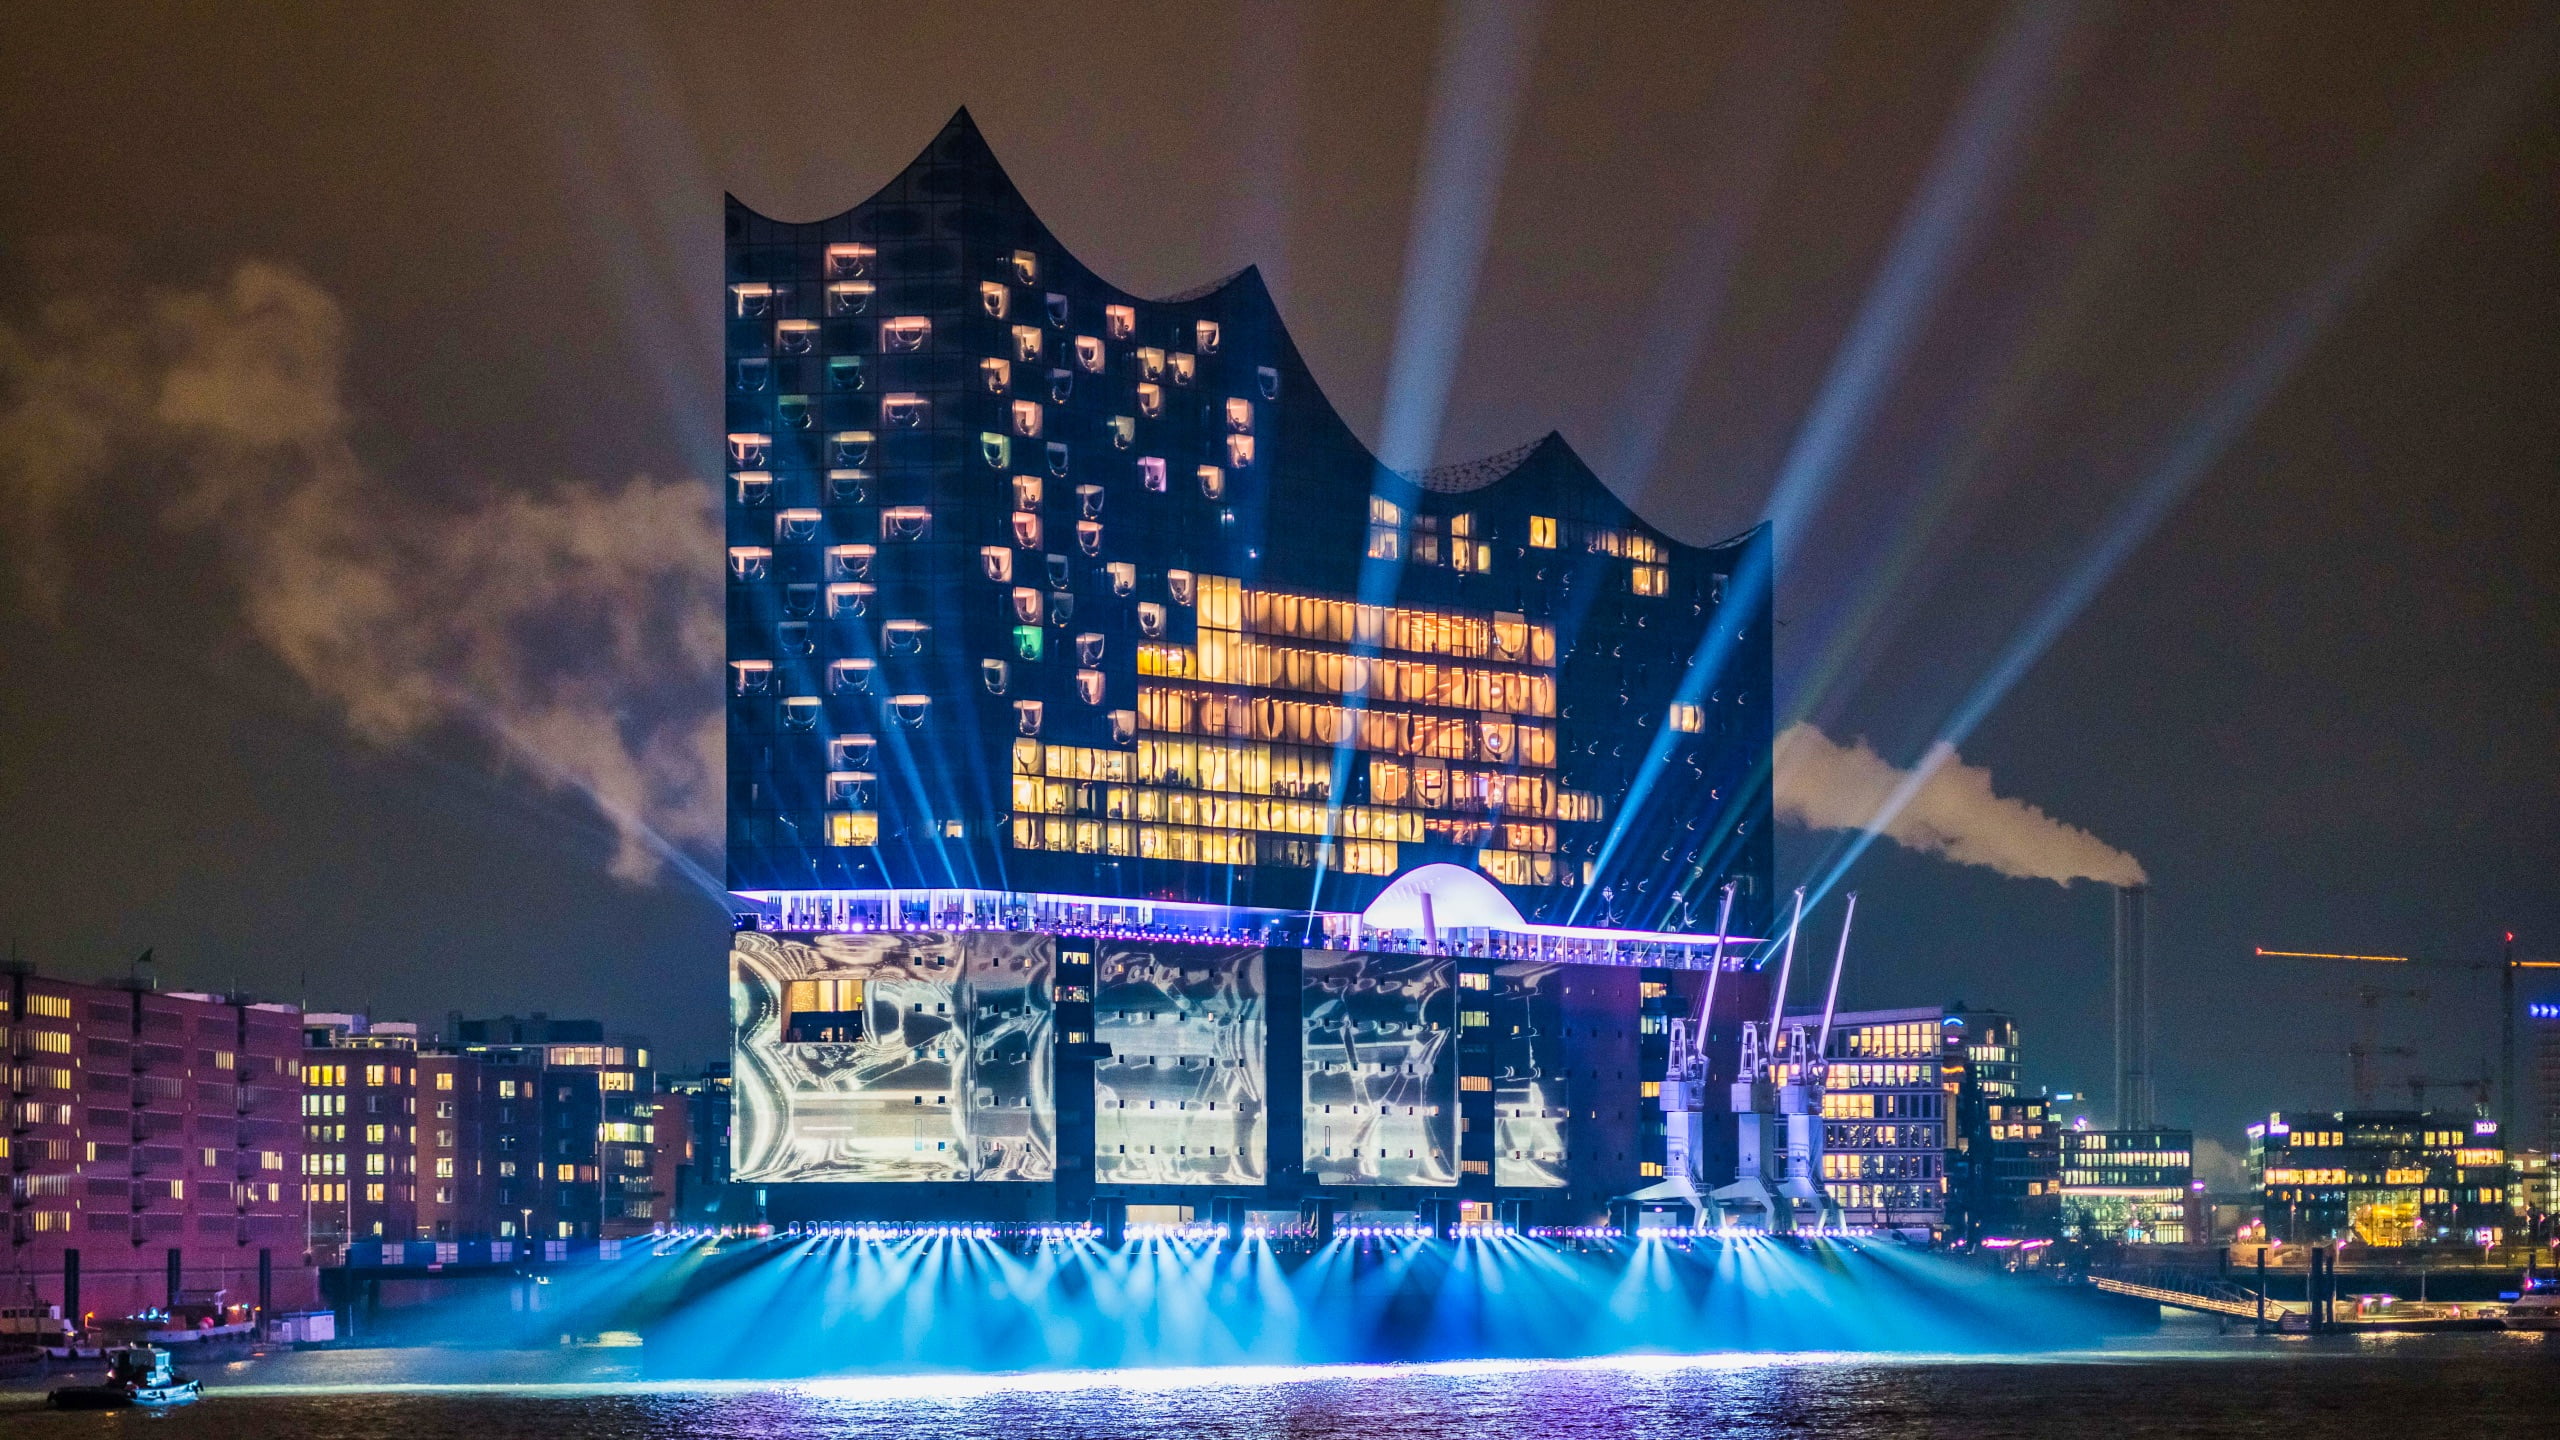 Du visar för närvarande Elbphilharmonie i Hamburg  – Europas mest påkostade och spektakulära konserthus